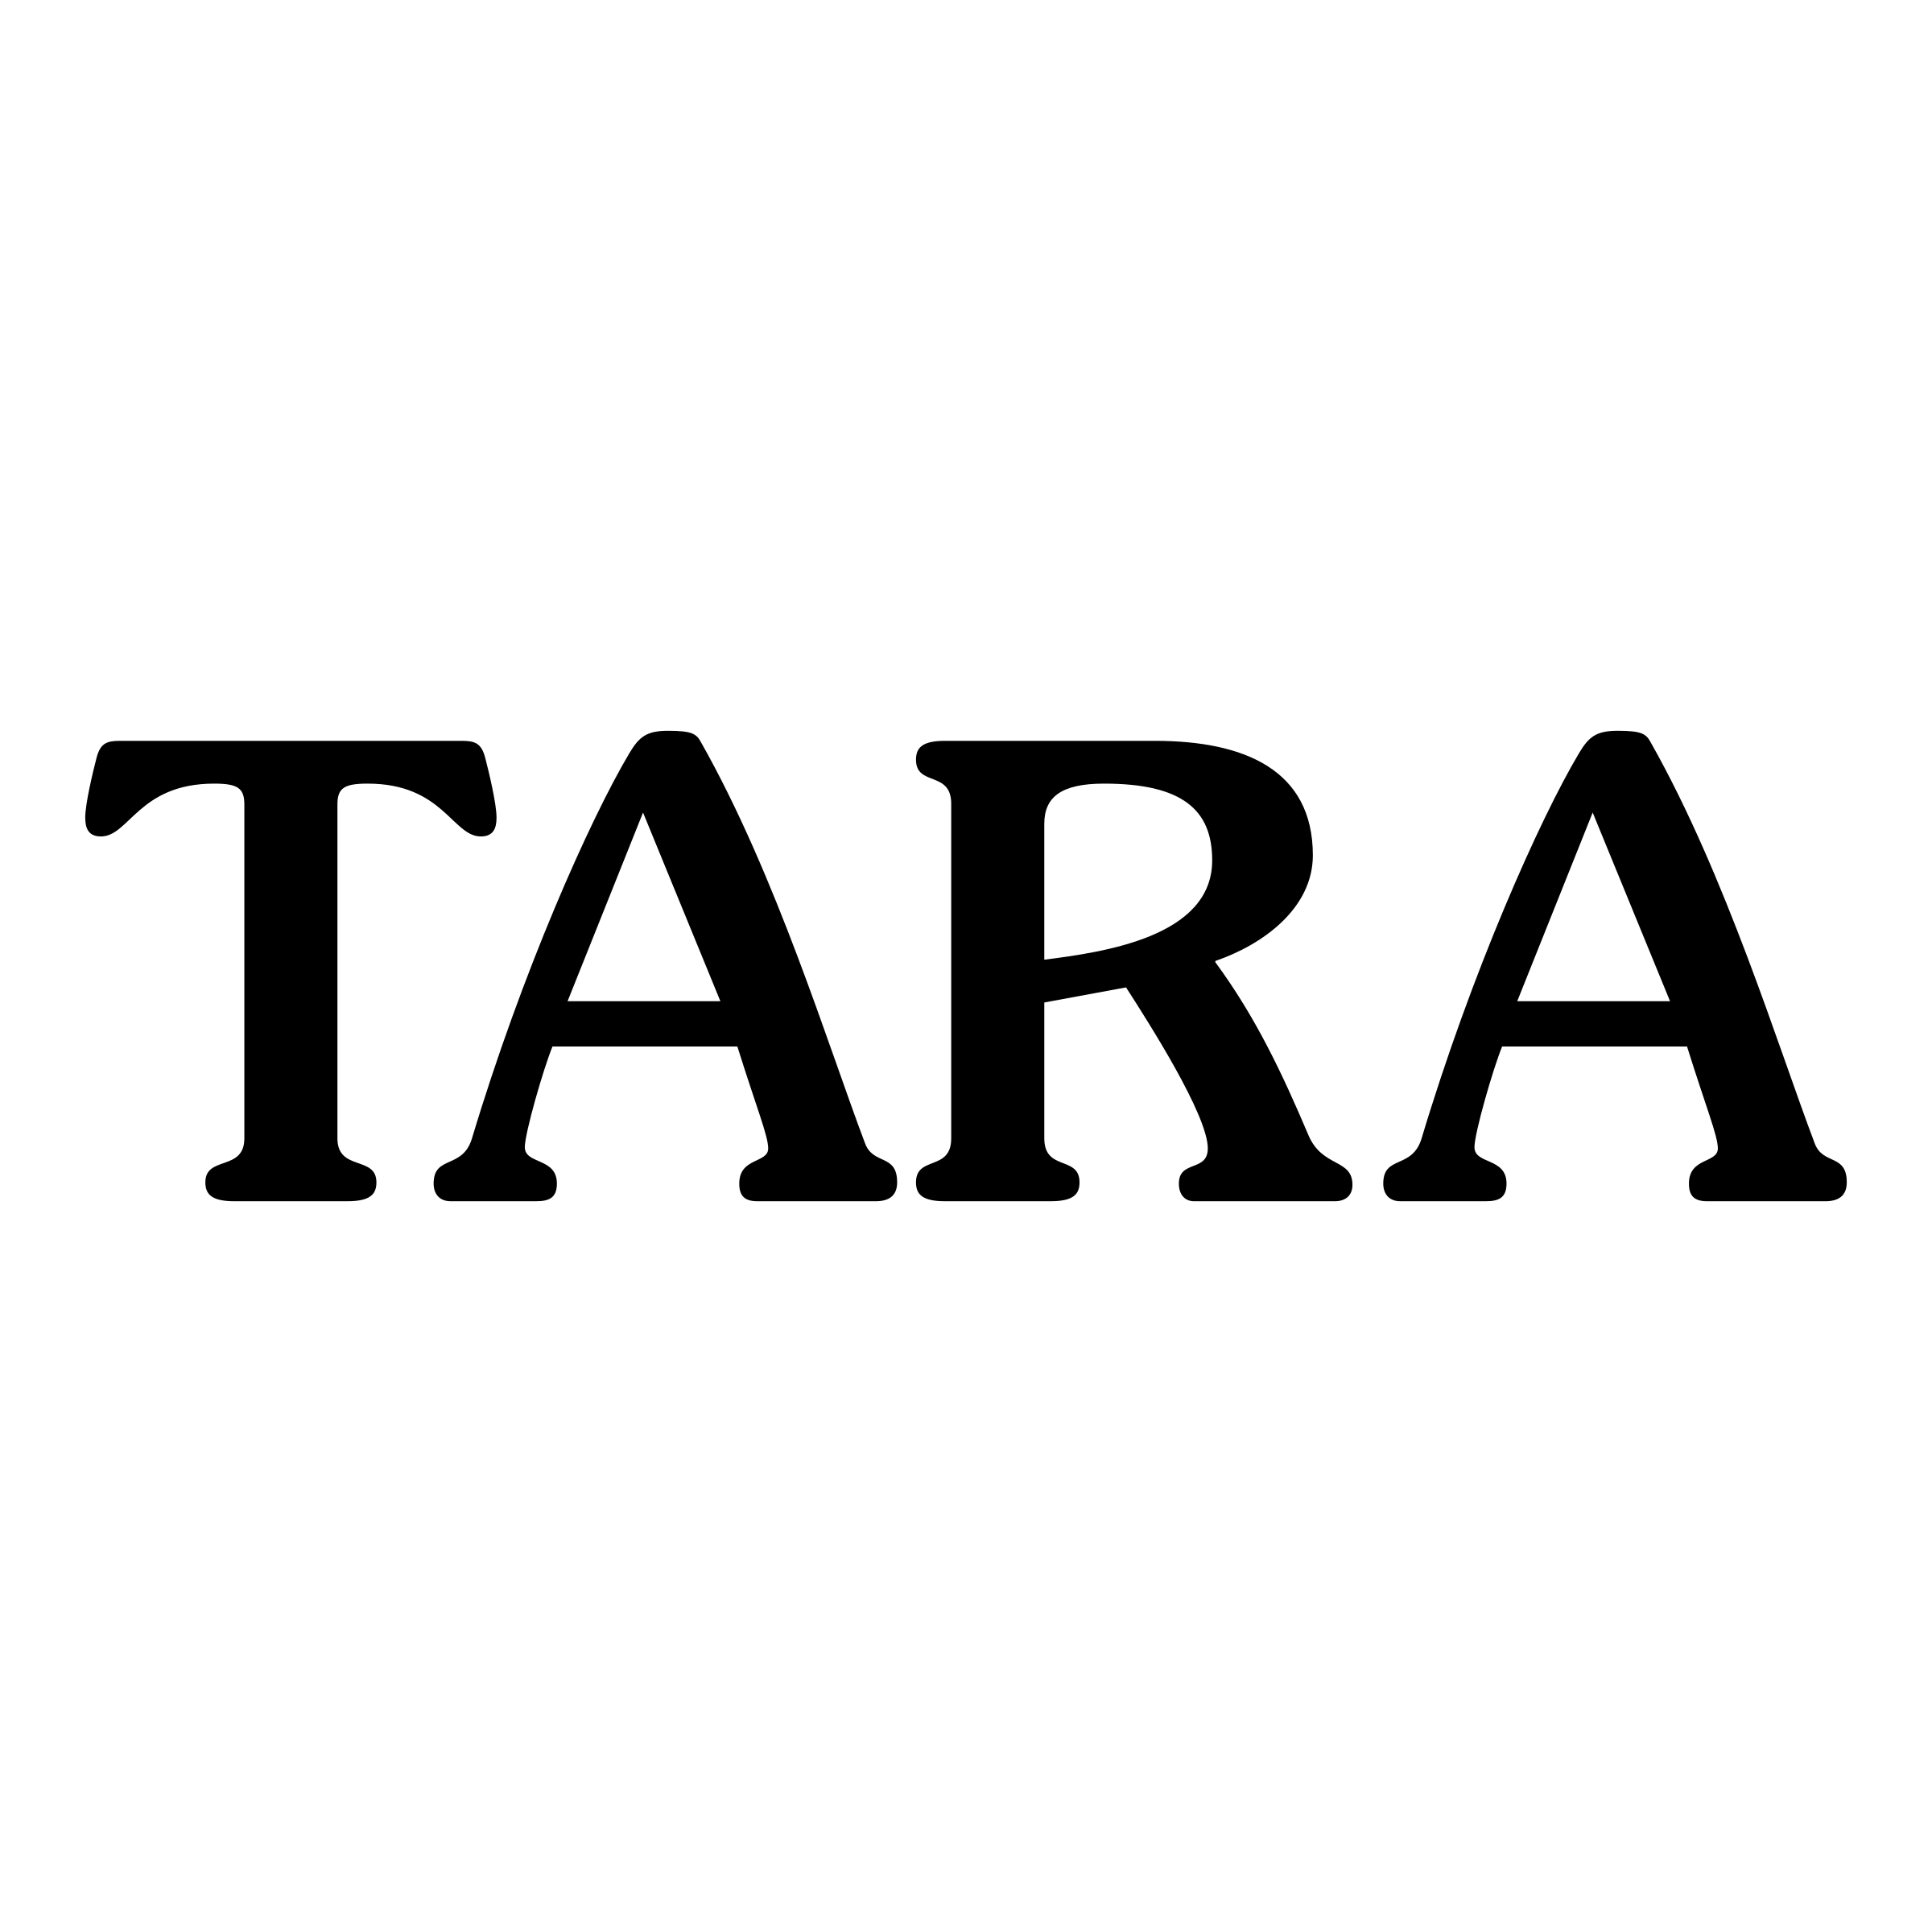 Tara Logo - Tara Logo PNG Transparent & SVG Vector